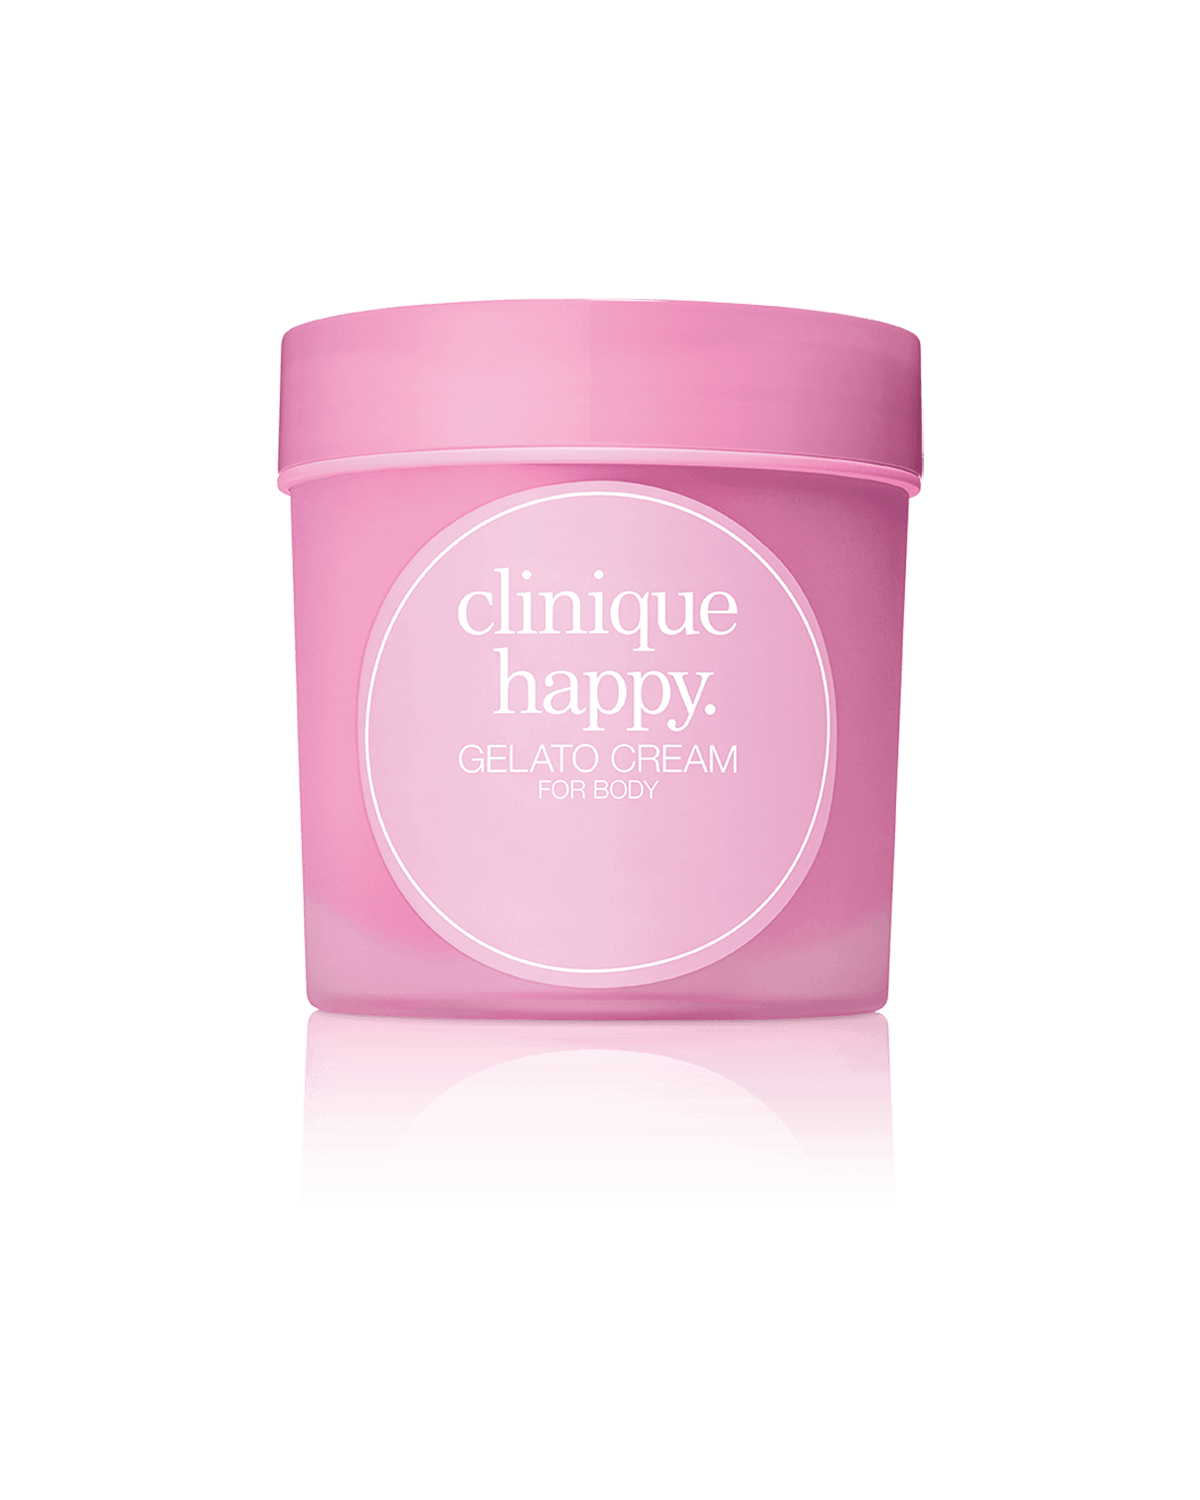 FREE FULL SIZE: Clinique Happy™ Gelato Cream For Body in Berry Blush